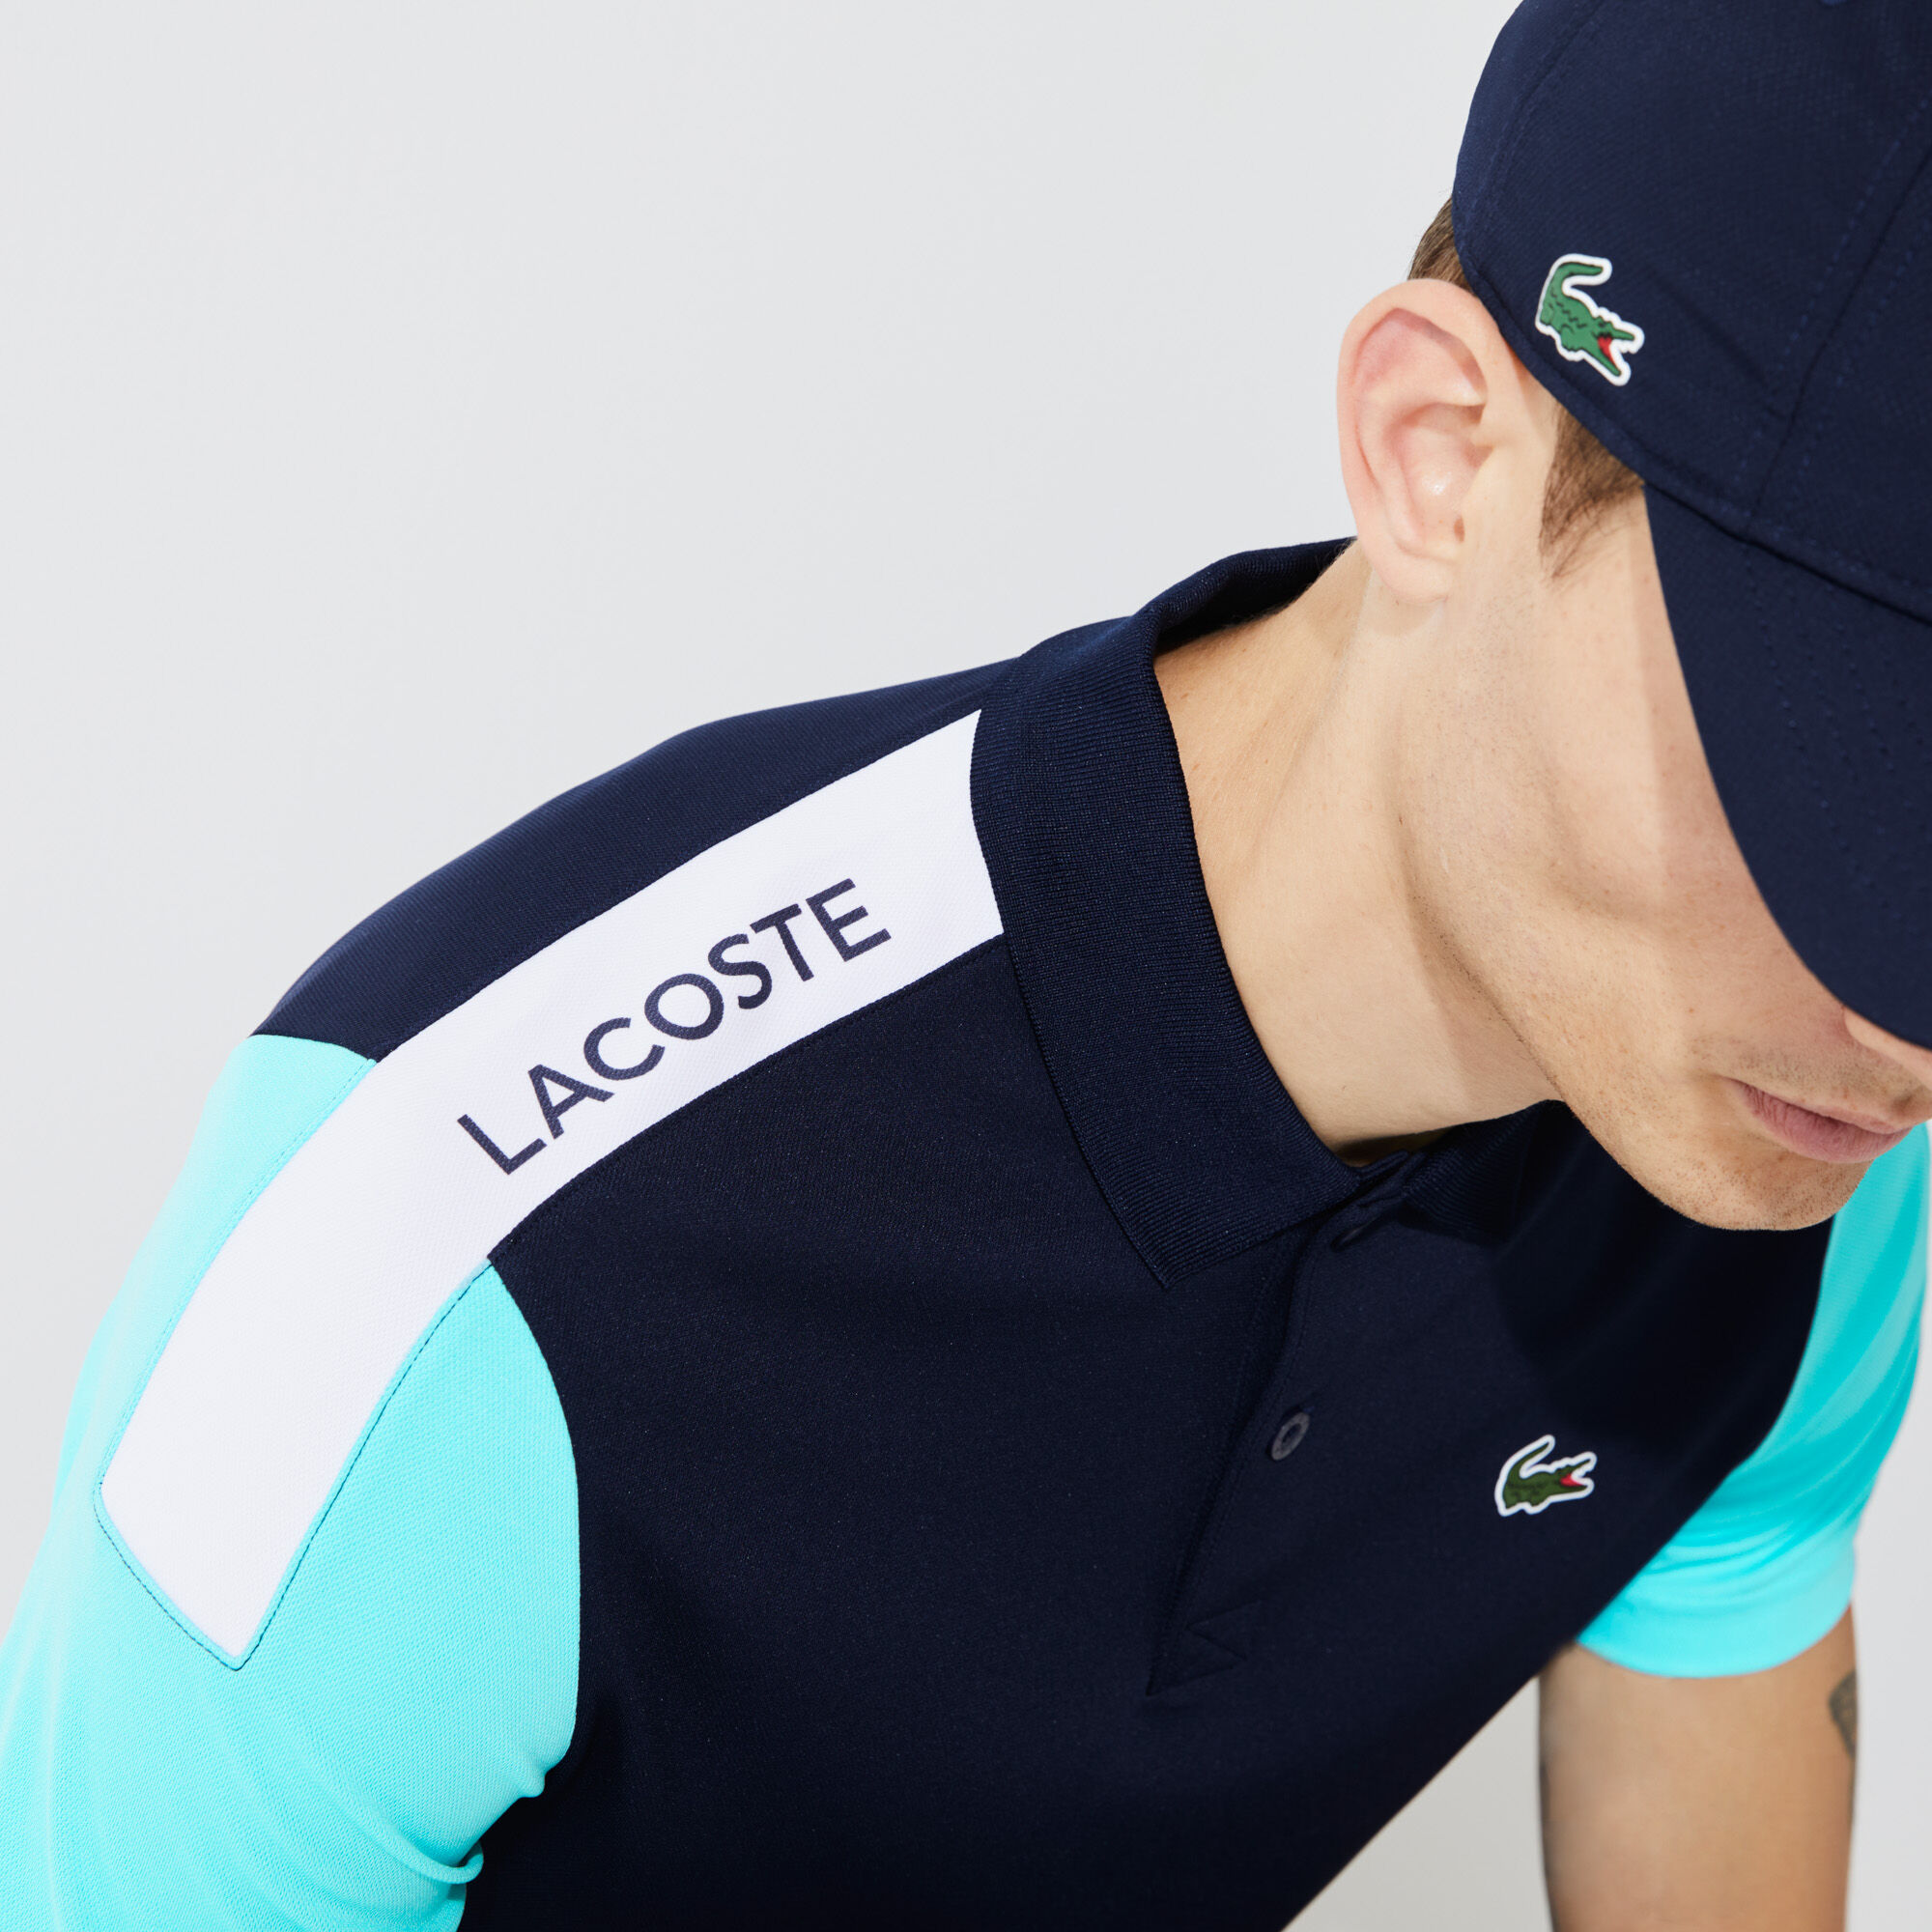 Men's Lacoste SPORT Breathable Resistant Piqué Polo Shirt